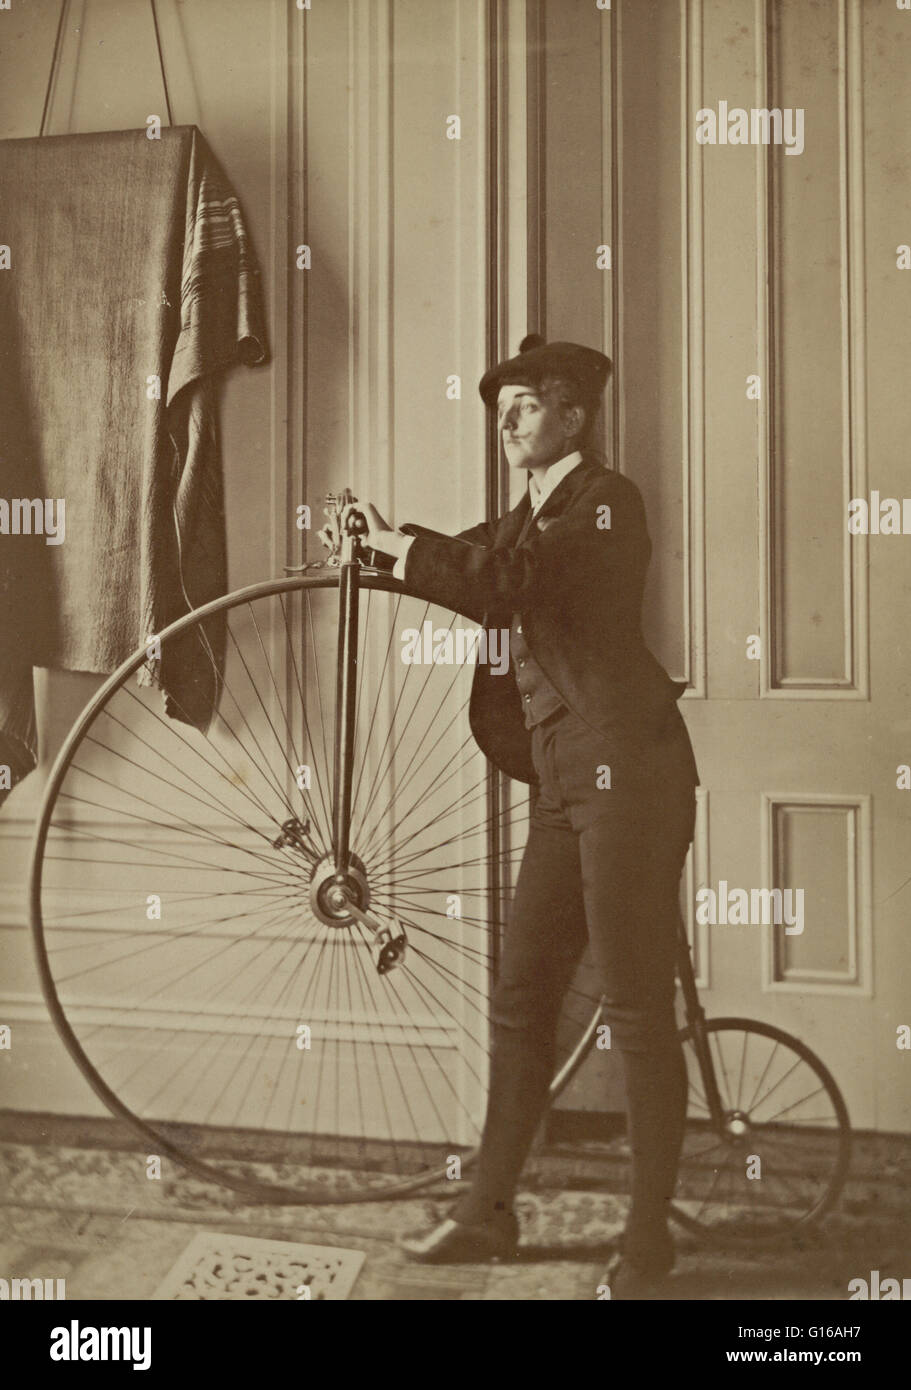 Johnston Self-portrait vestito come un uomo con i baffi falsi, poste con la bicicletta, circa 1890. Francesca "Fannie' Benjamin Johnston (15 gennaio 1864 - 16 Maggio 1952) è stata una delle prime donne americane fotografi e photojournalists. Ella era dato da lui Foto Stock